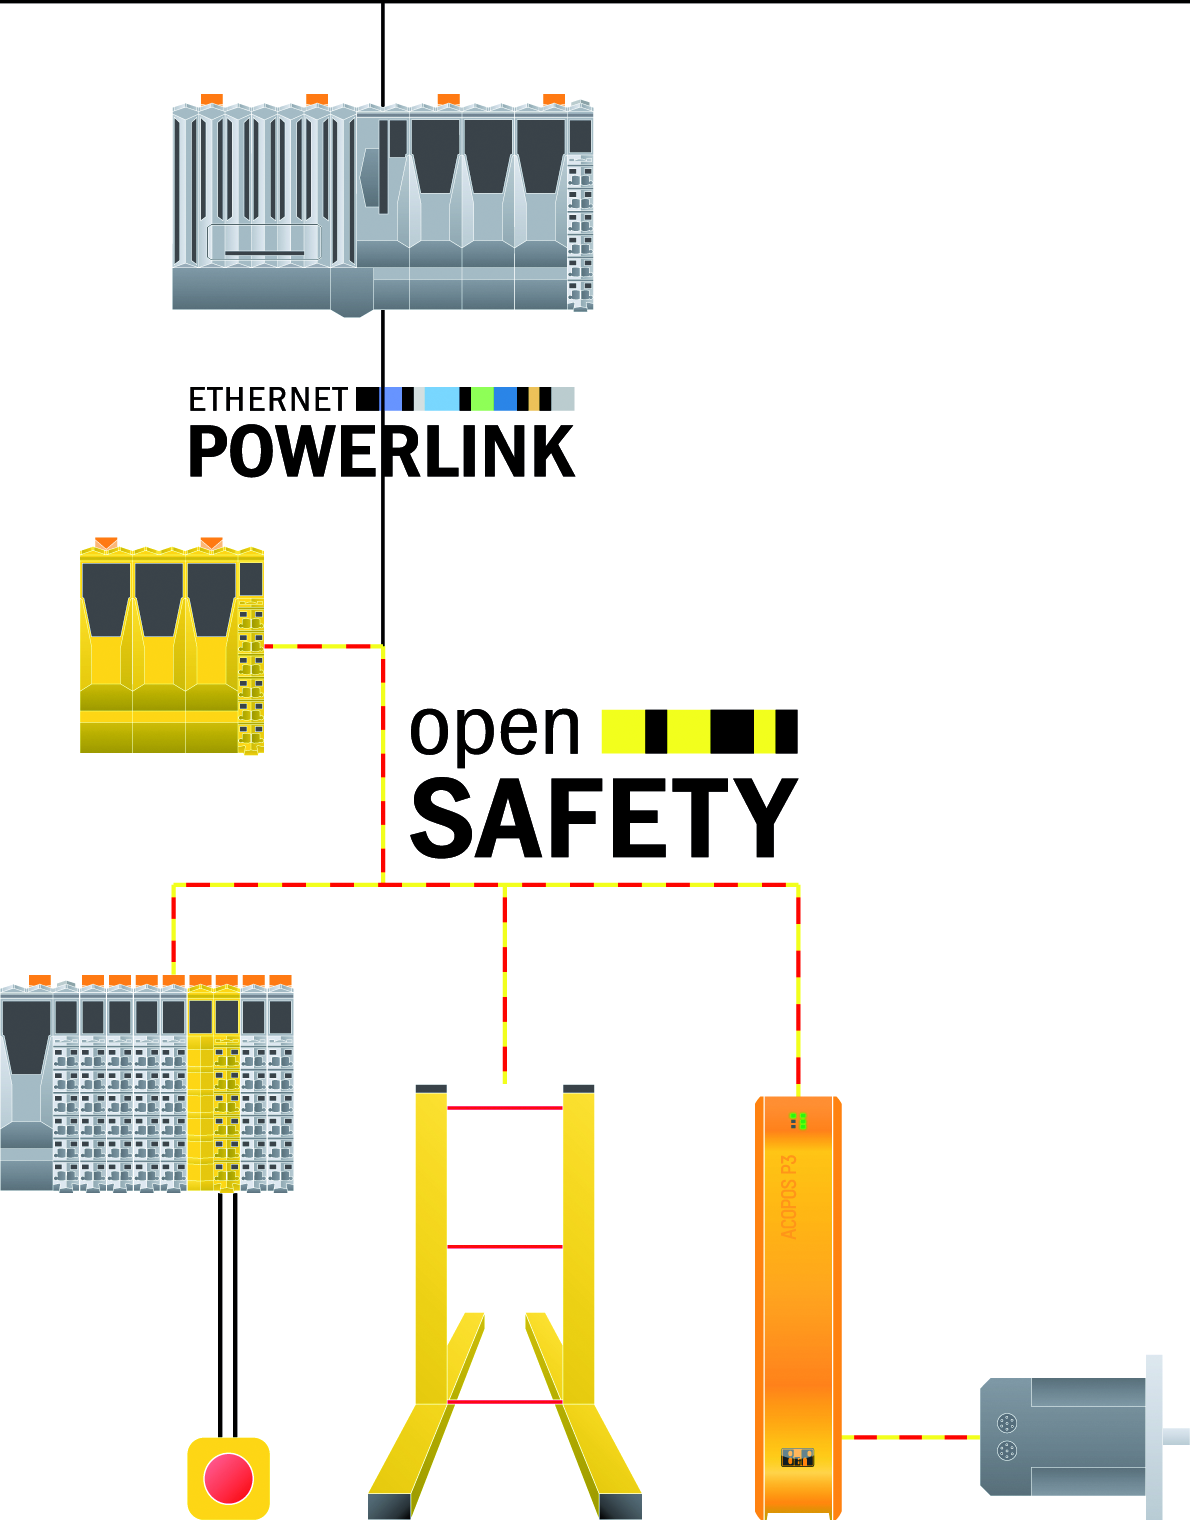 Das openSAFETY-Lichtgitter wird ebenso wie sichere Antriebe und I/Os direkt in das Sicherheitsnetzwerk eingebunden. Der Verdrahtungsaufwand wird auf ein Minimum reduziert.